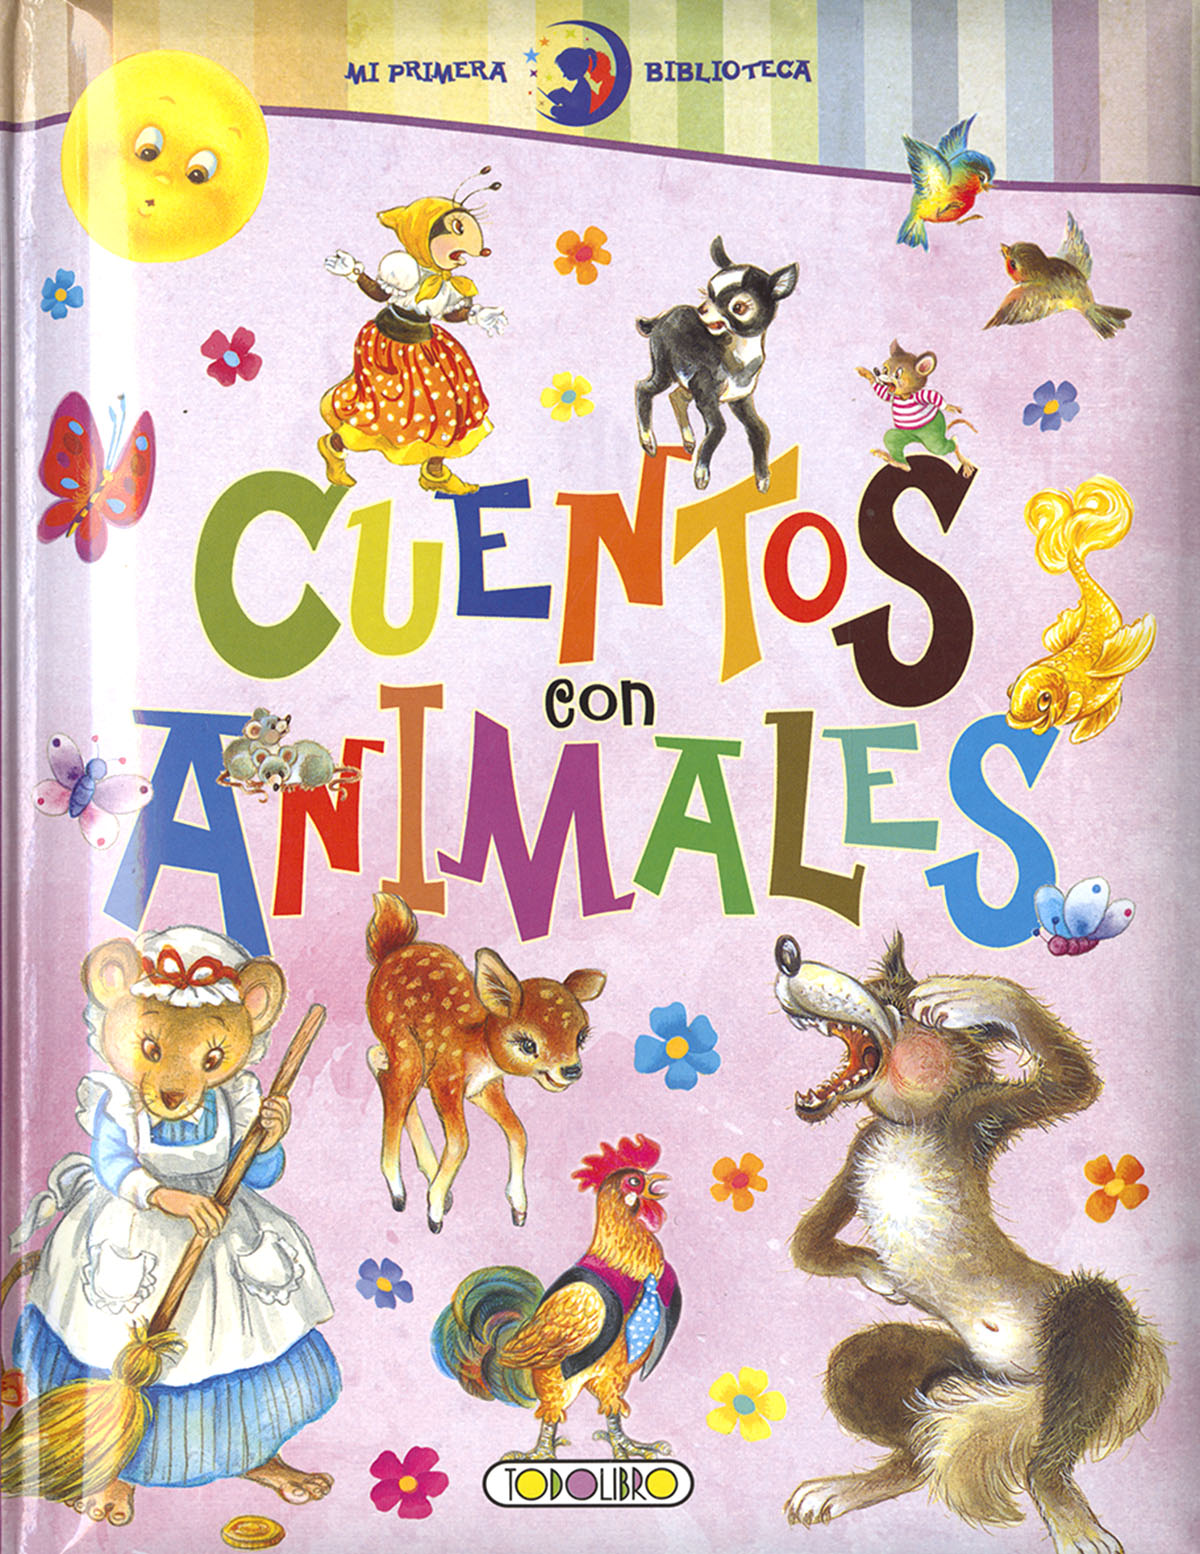 Libros de cuentos en español: Cuentos infantiles en español